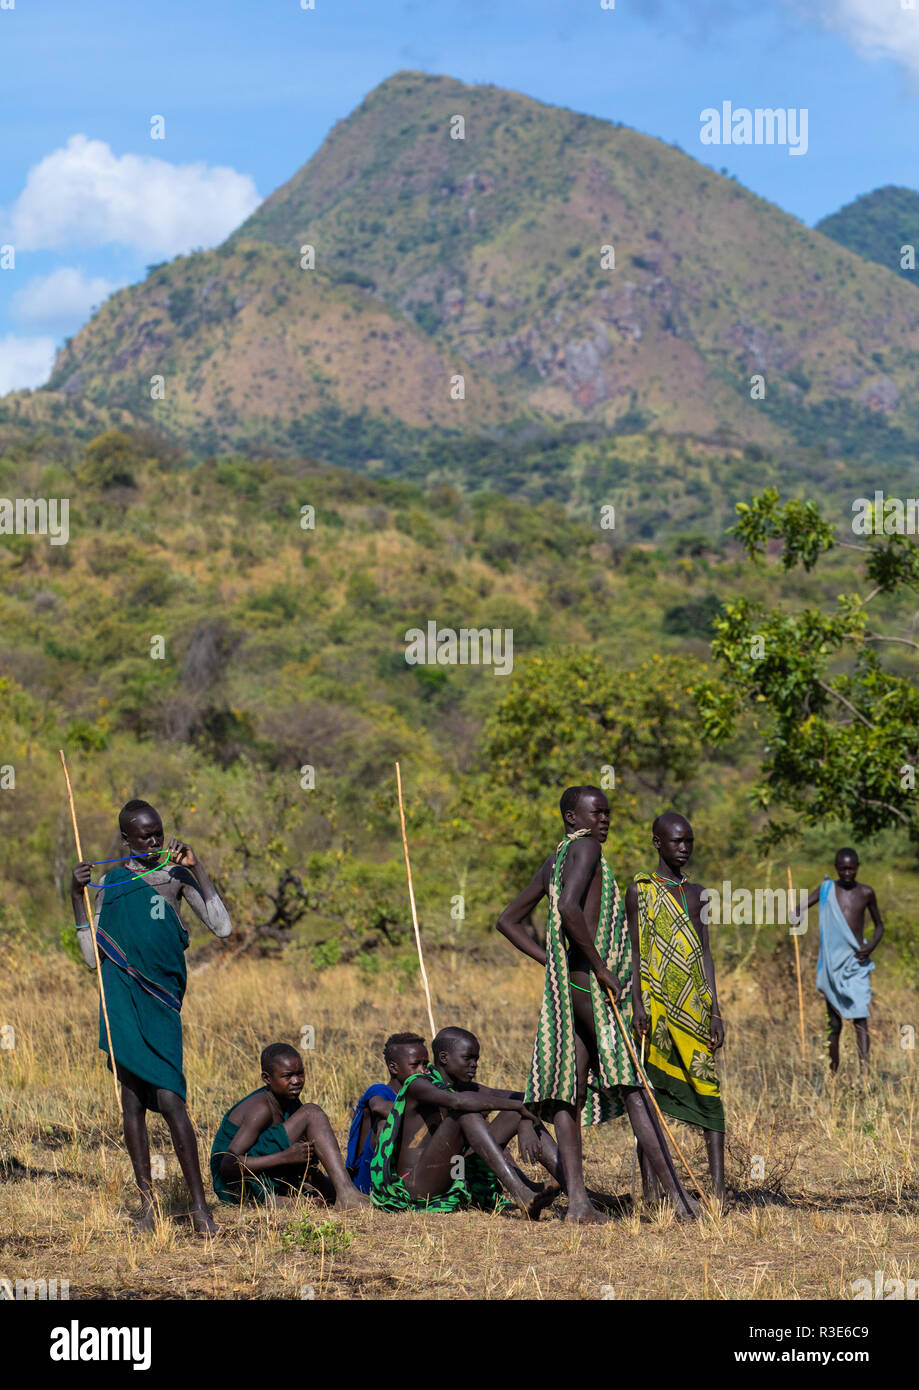 Suri Stamm Teenagern während eines donga Stockkampf Ritual, Omo Valley, Kibish, Äthiopien Stockfoto